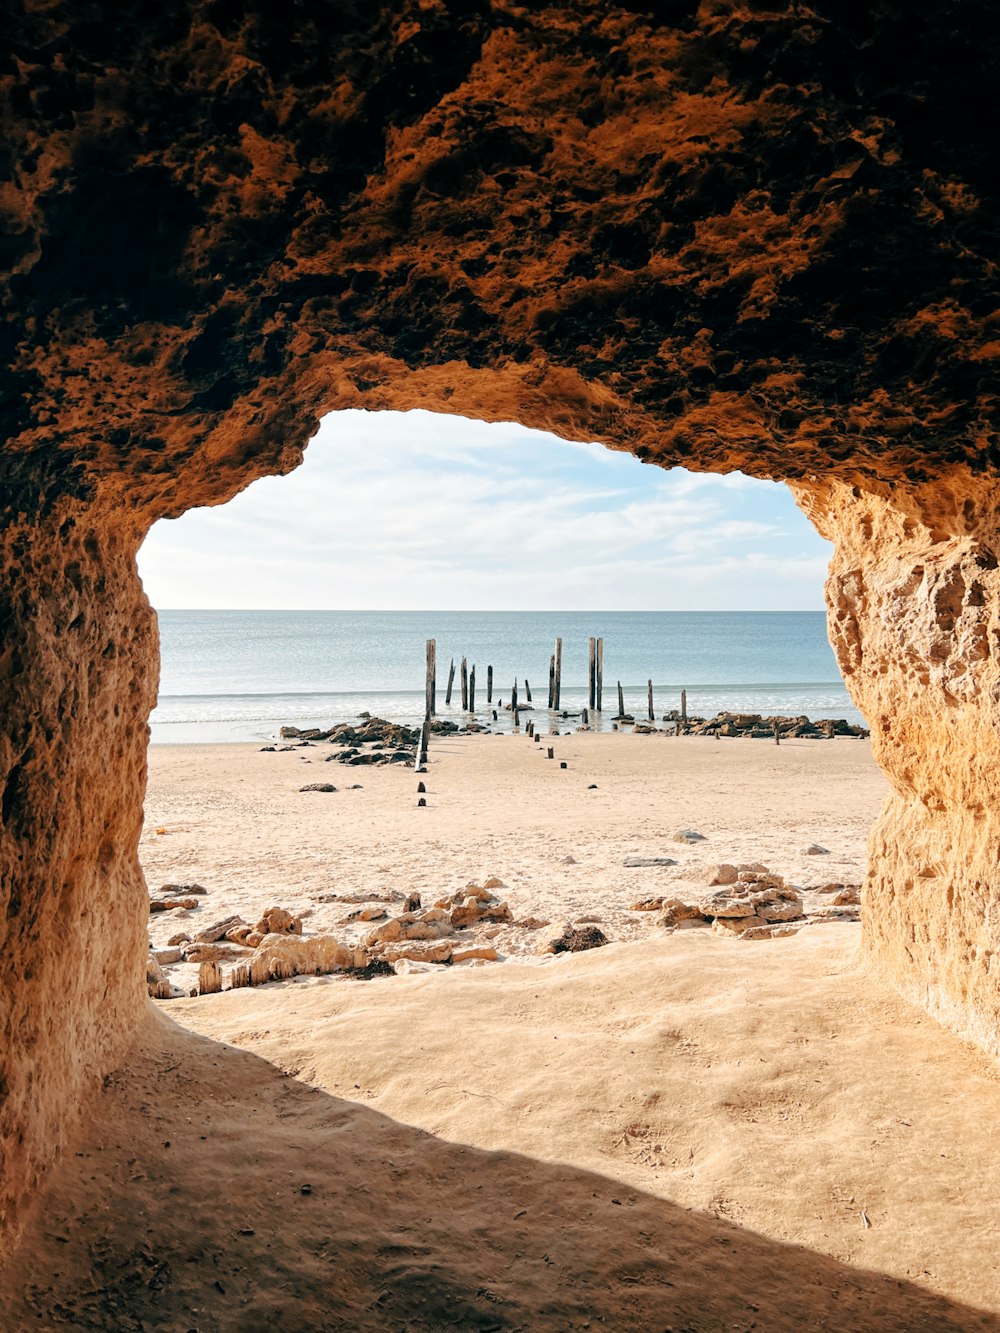 a view of a beach through a cave